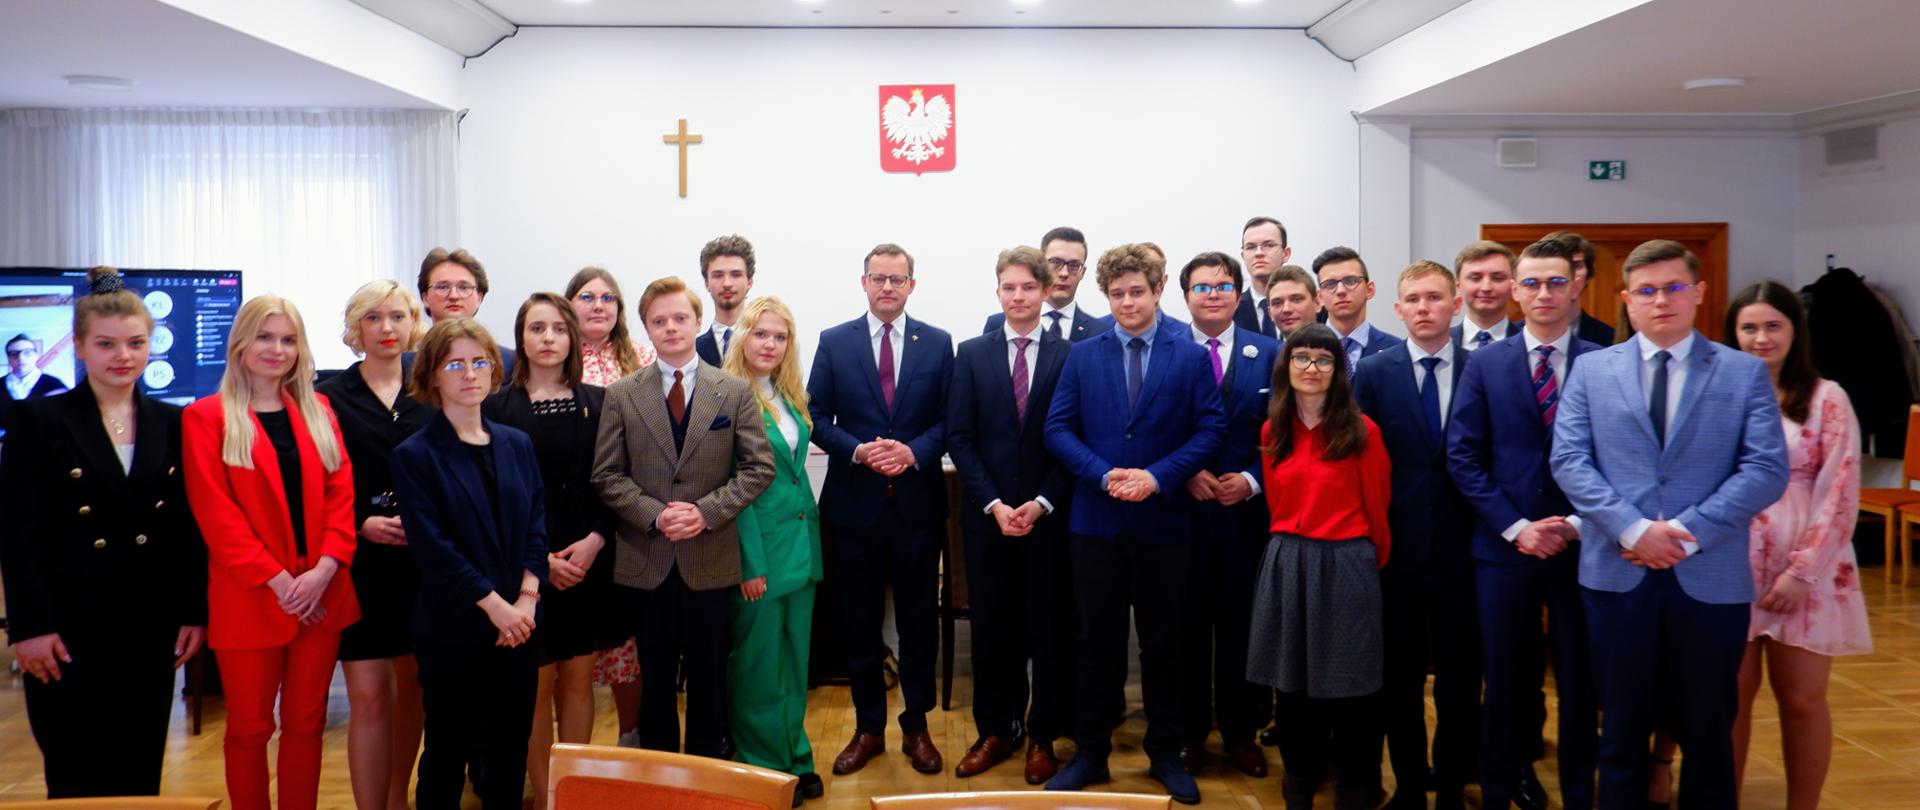 Wiceminister Marcin Romanowski z członkami Młodzieżowej Rady Sprawiedliwości II kadencji